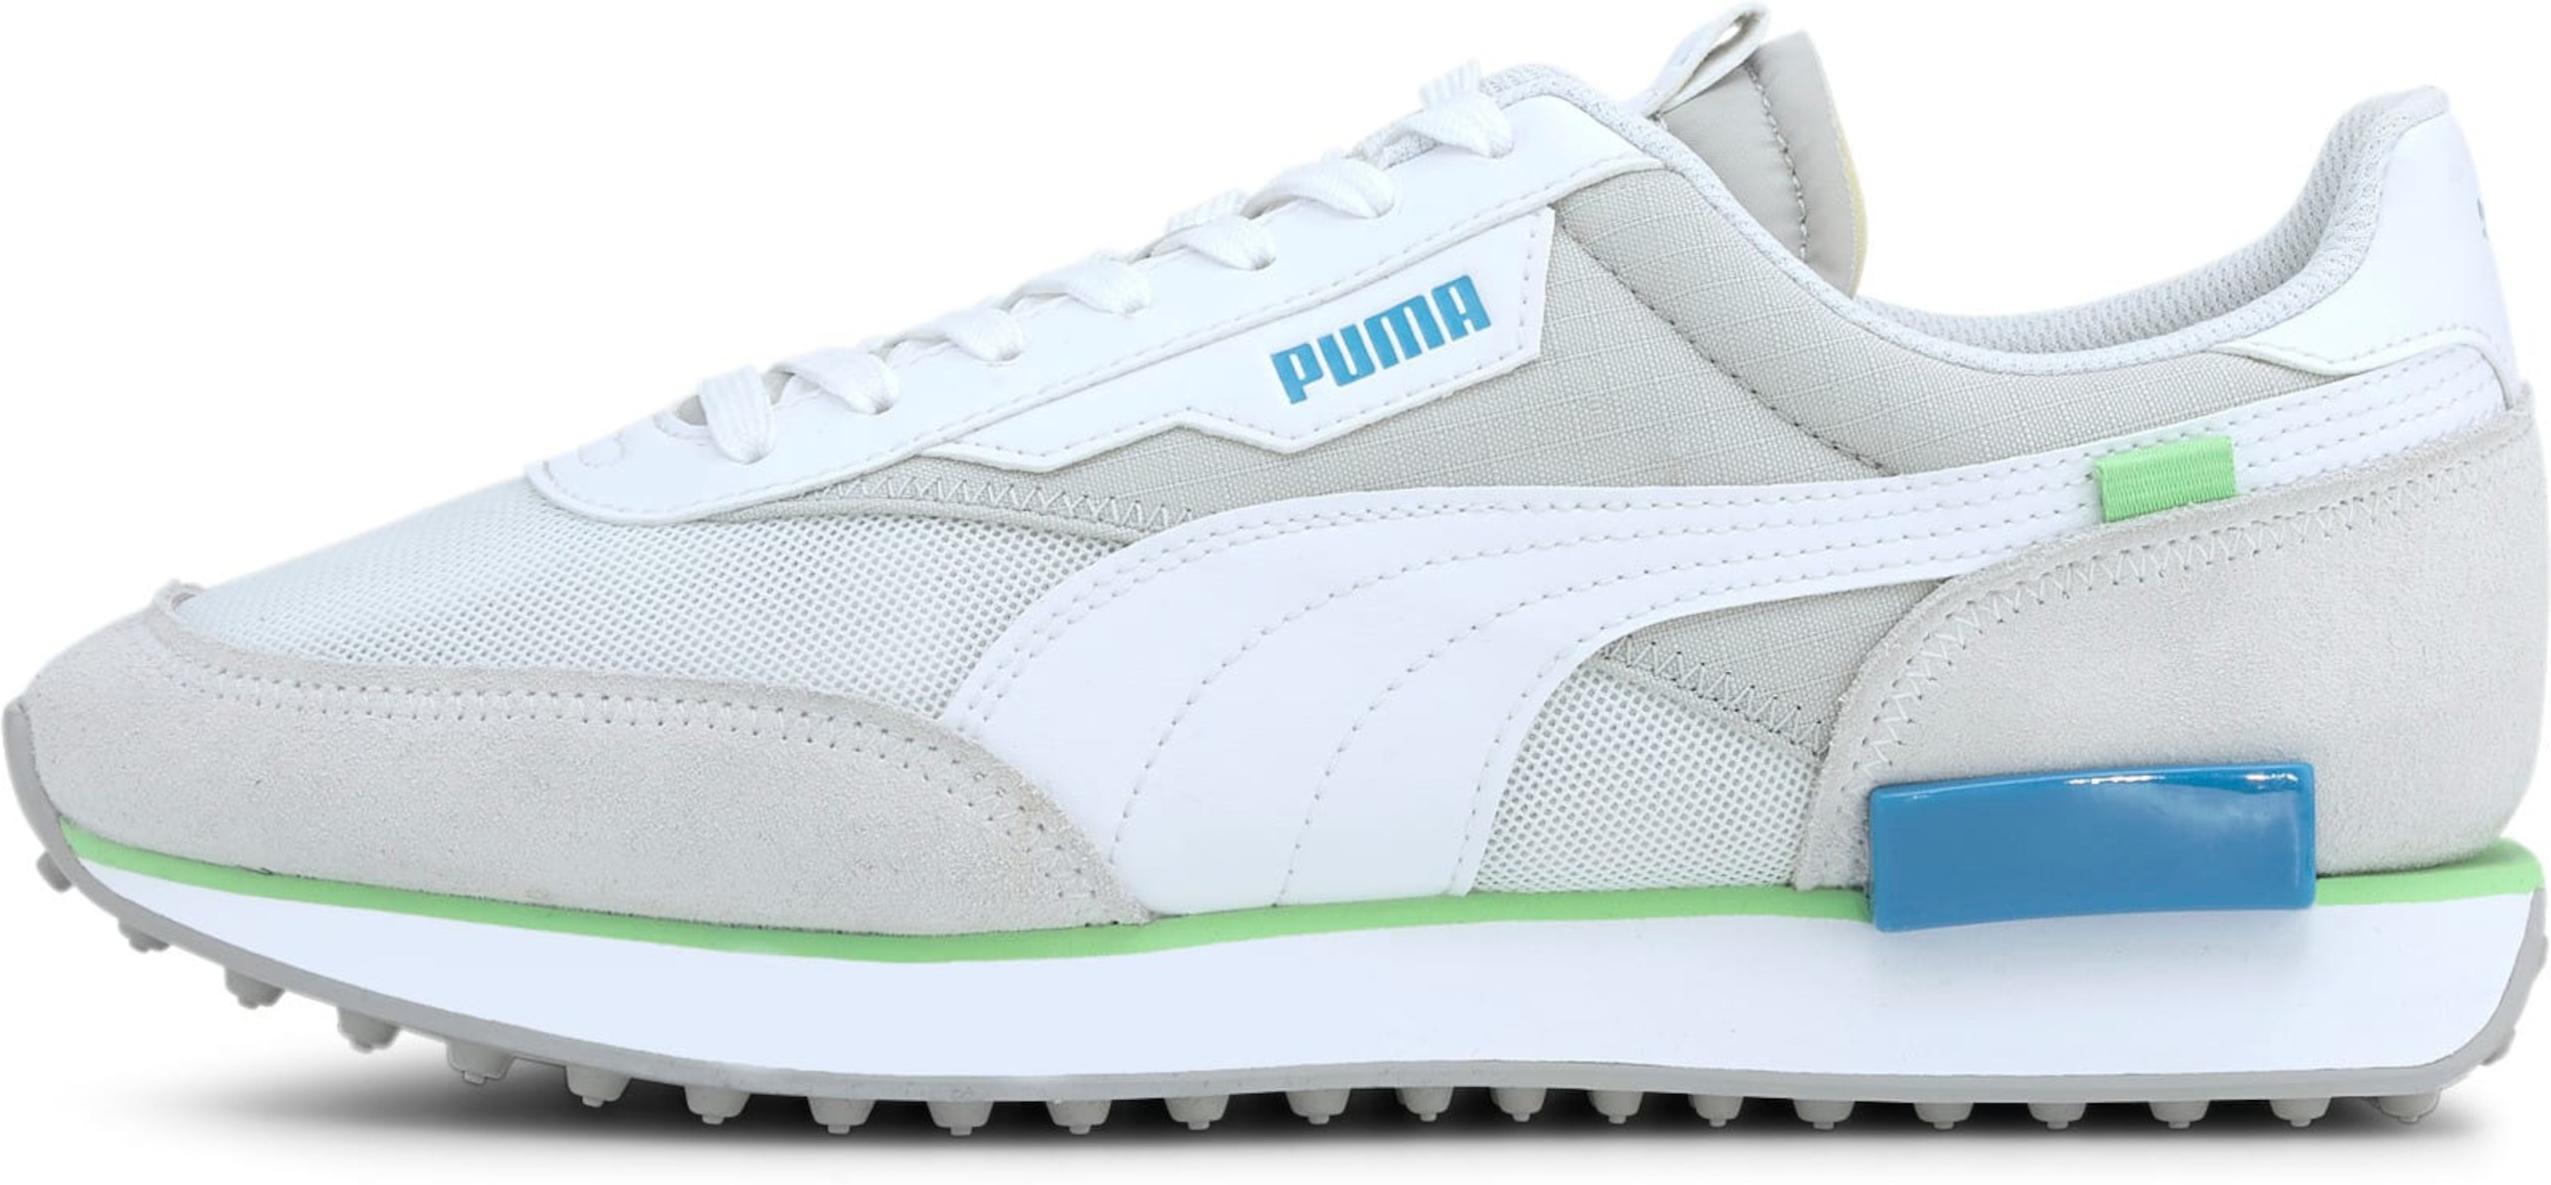 Schuhe Puma future ri core sneaker